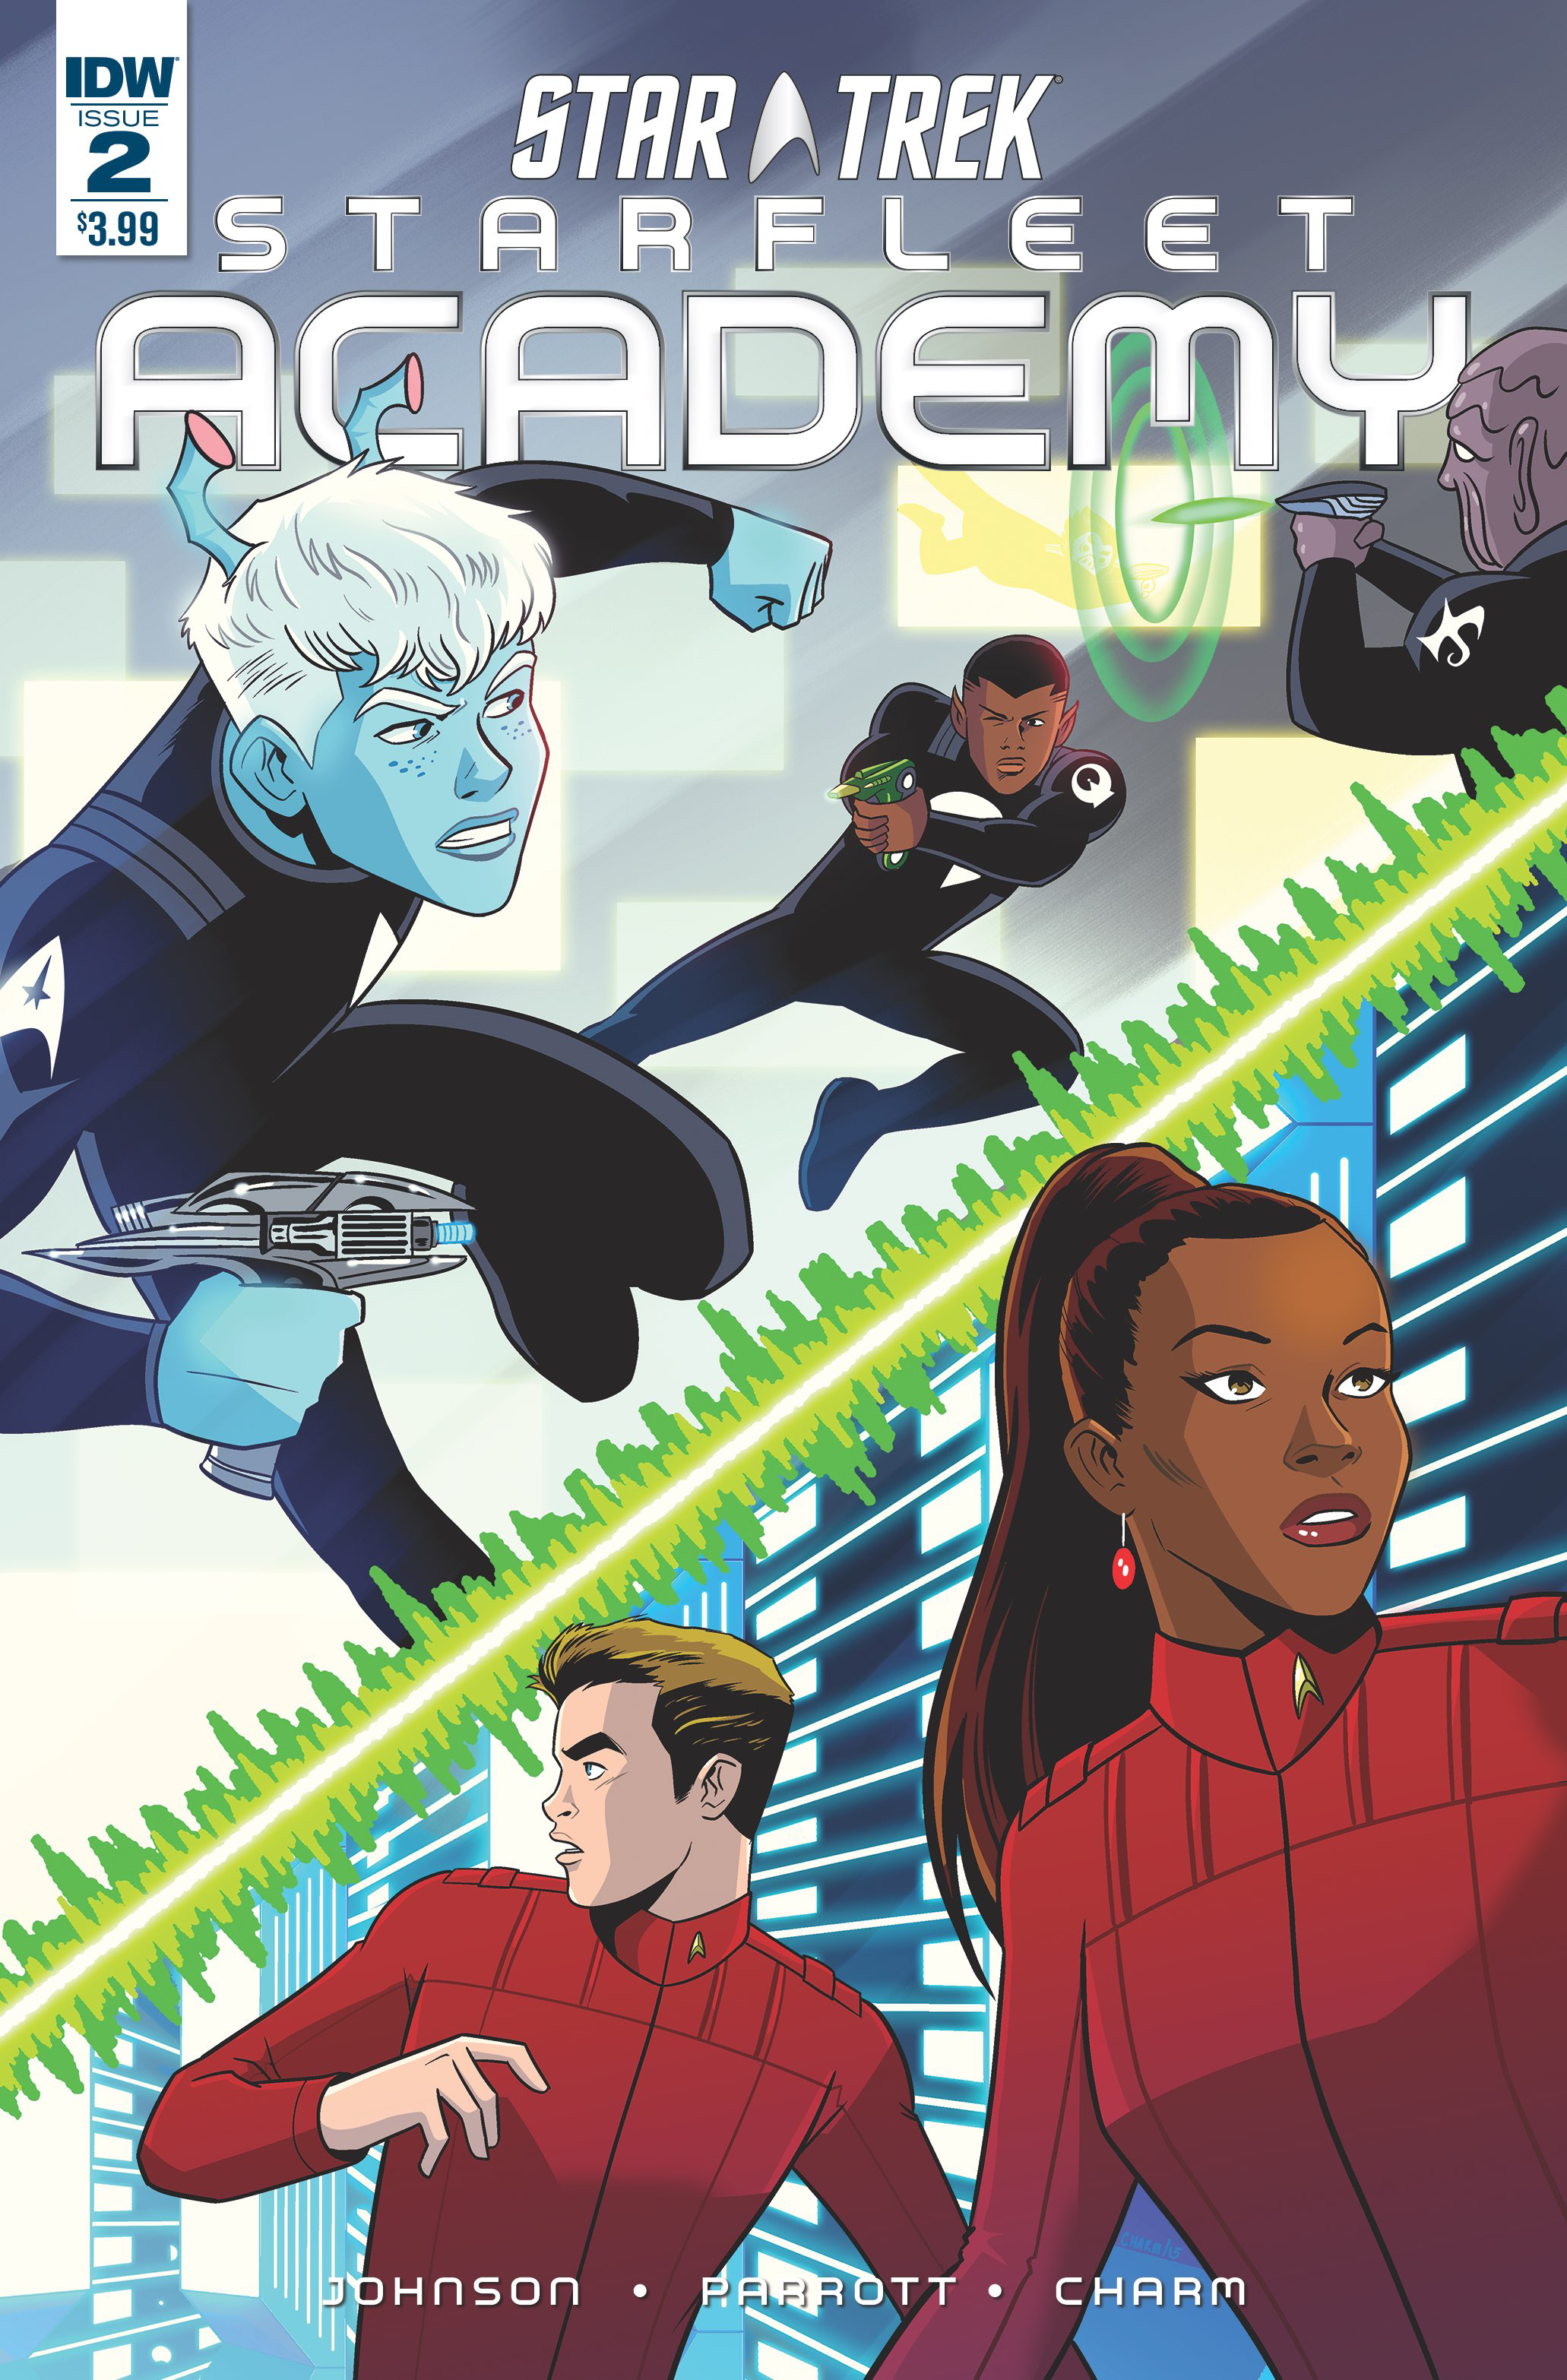 Star Trek: Starfleet Academy (IDW, 2015 series) #2 [Cover A]